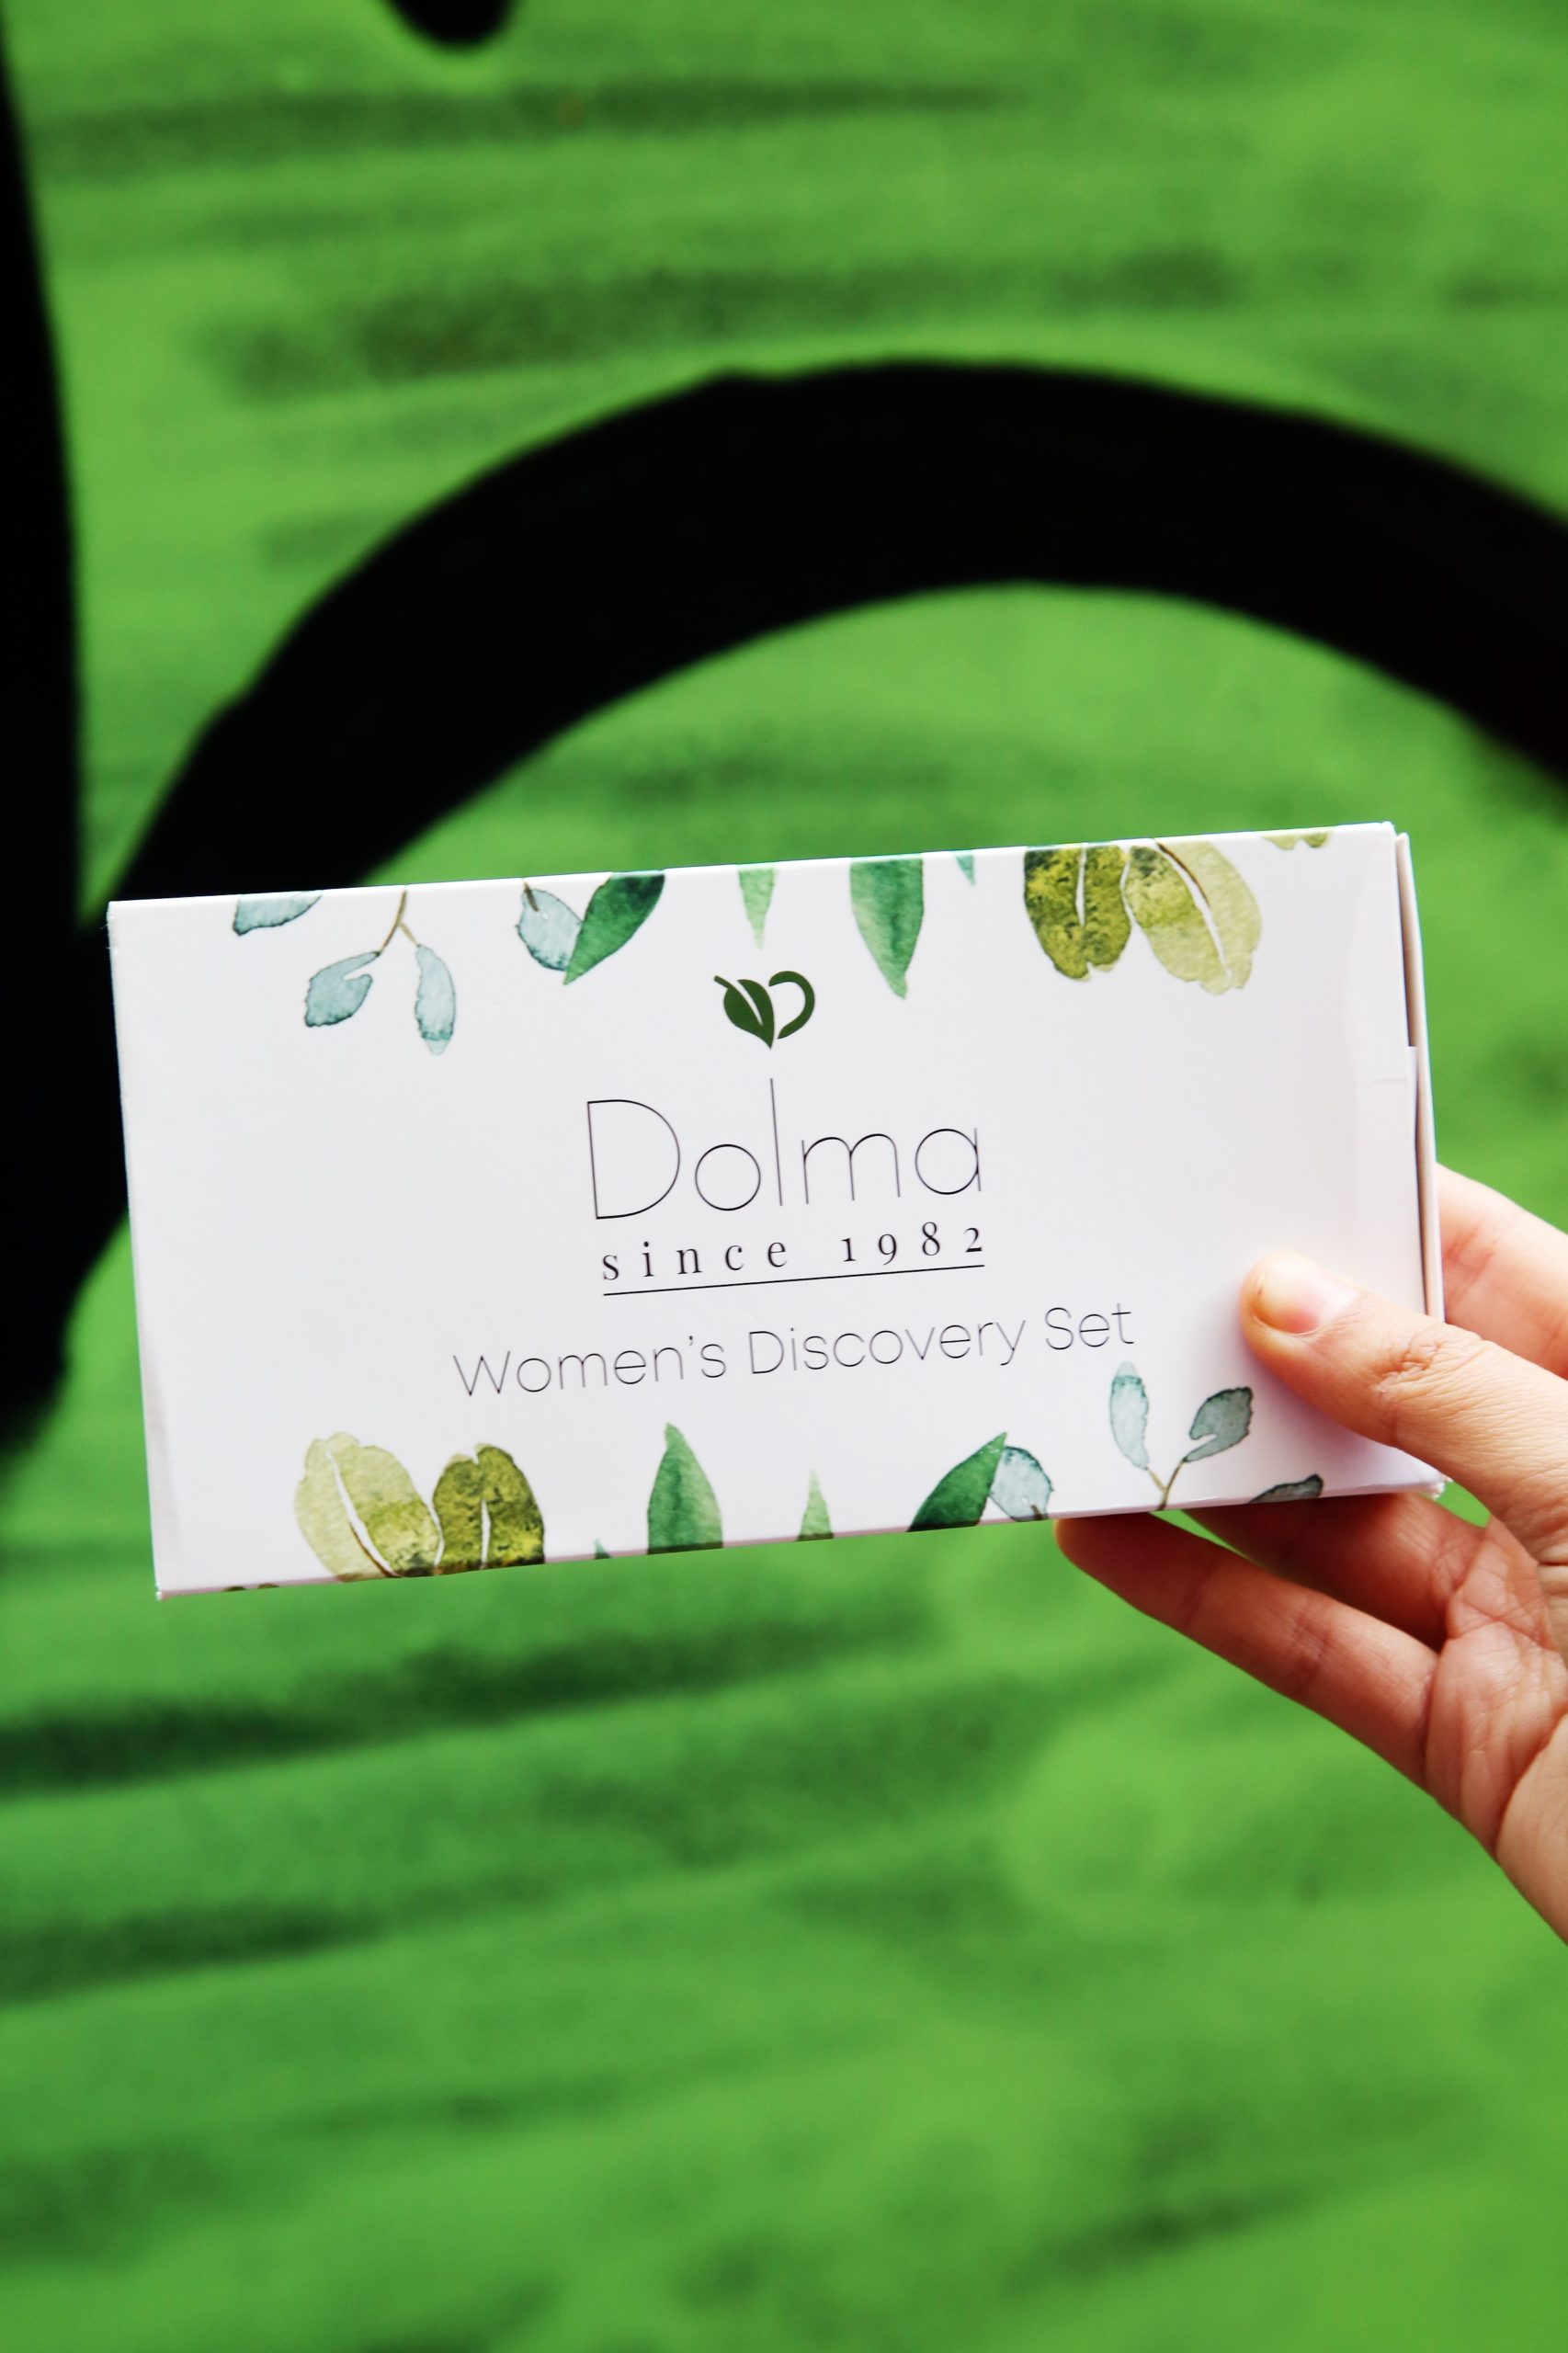 <img src="dolma.jpg" alt="dolma perfume Christmas gift for her"/> 